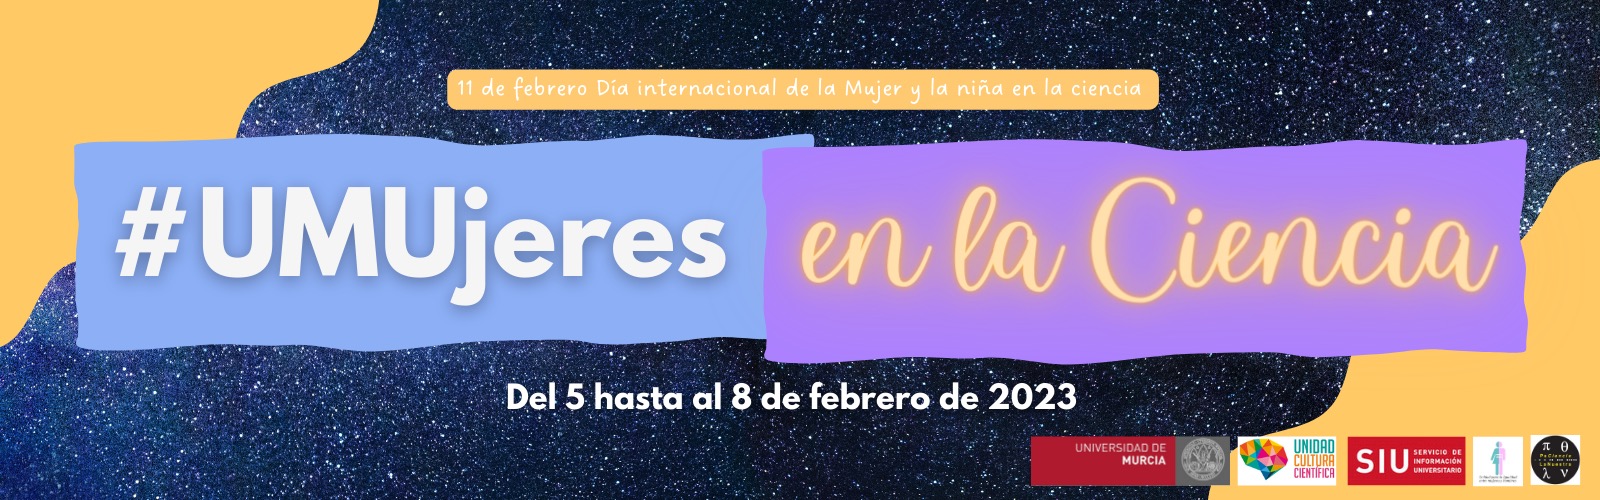 UMUjeres en la Ciencia, el concurso que celebra el Día Internacional de la Mujer y la Niña en la Ciencia